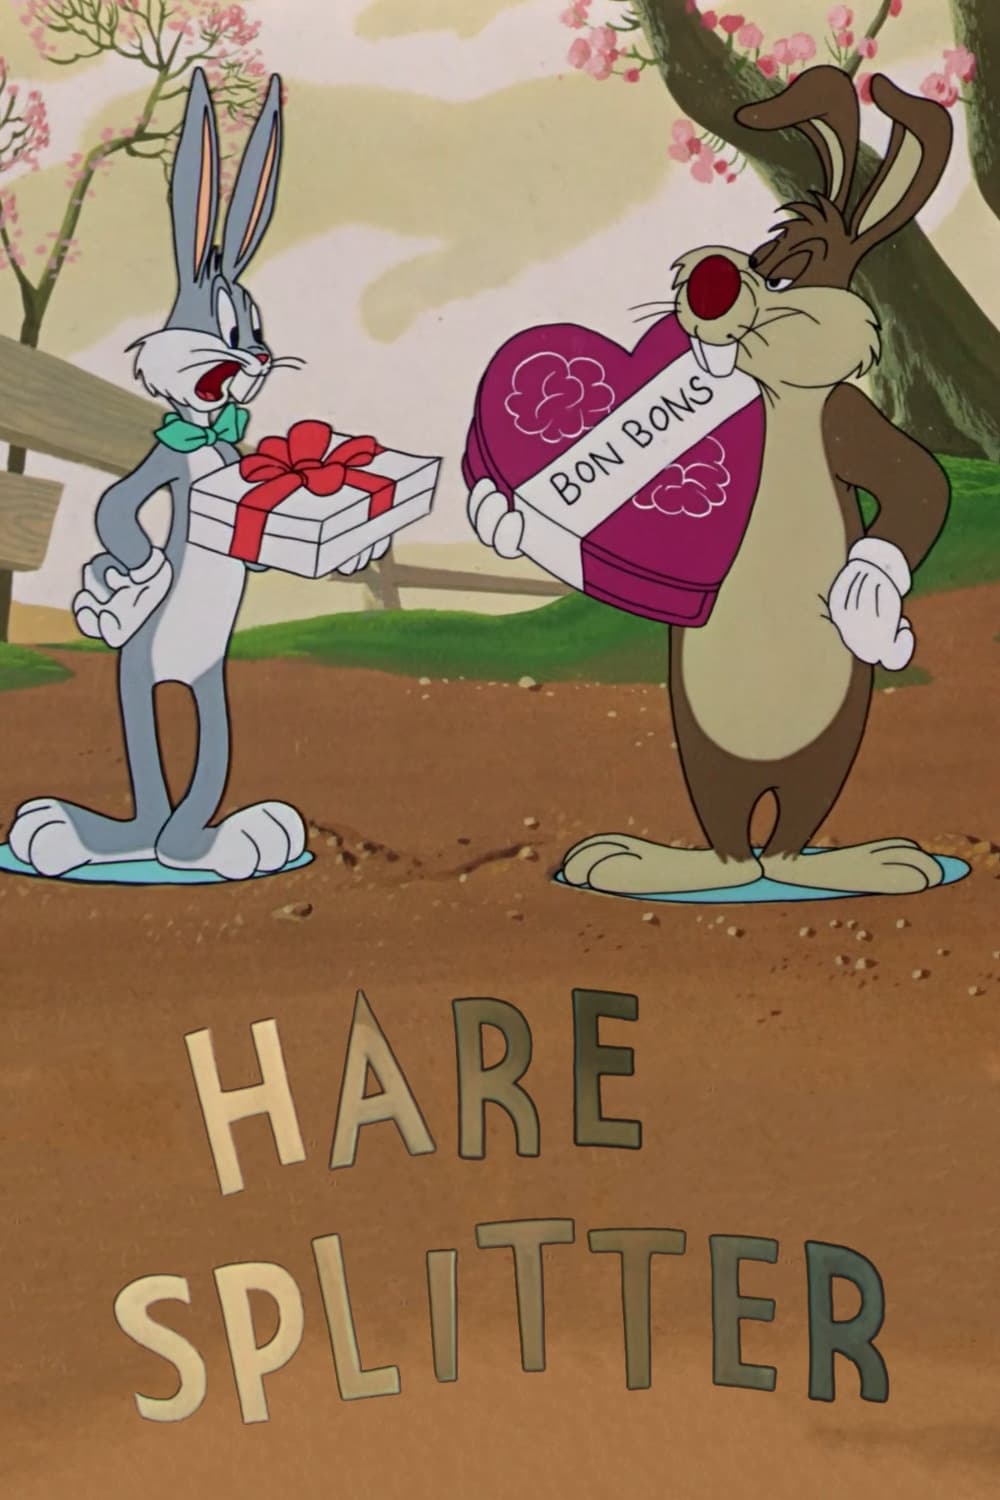 Hare Splitter (1948)